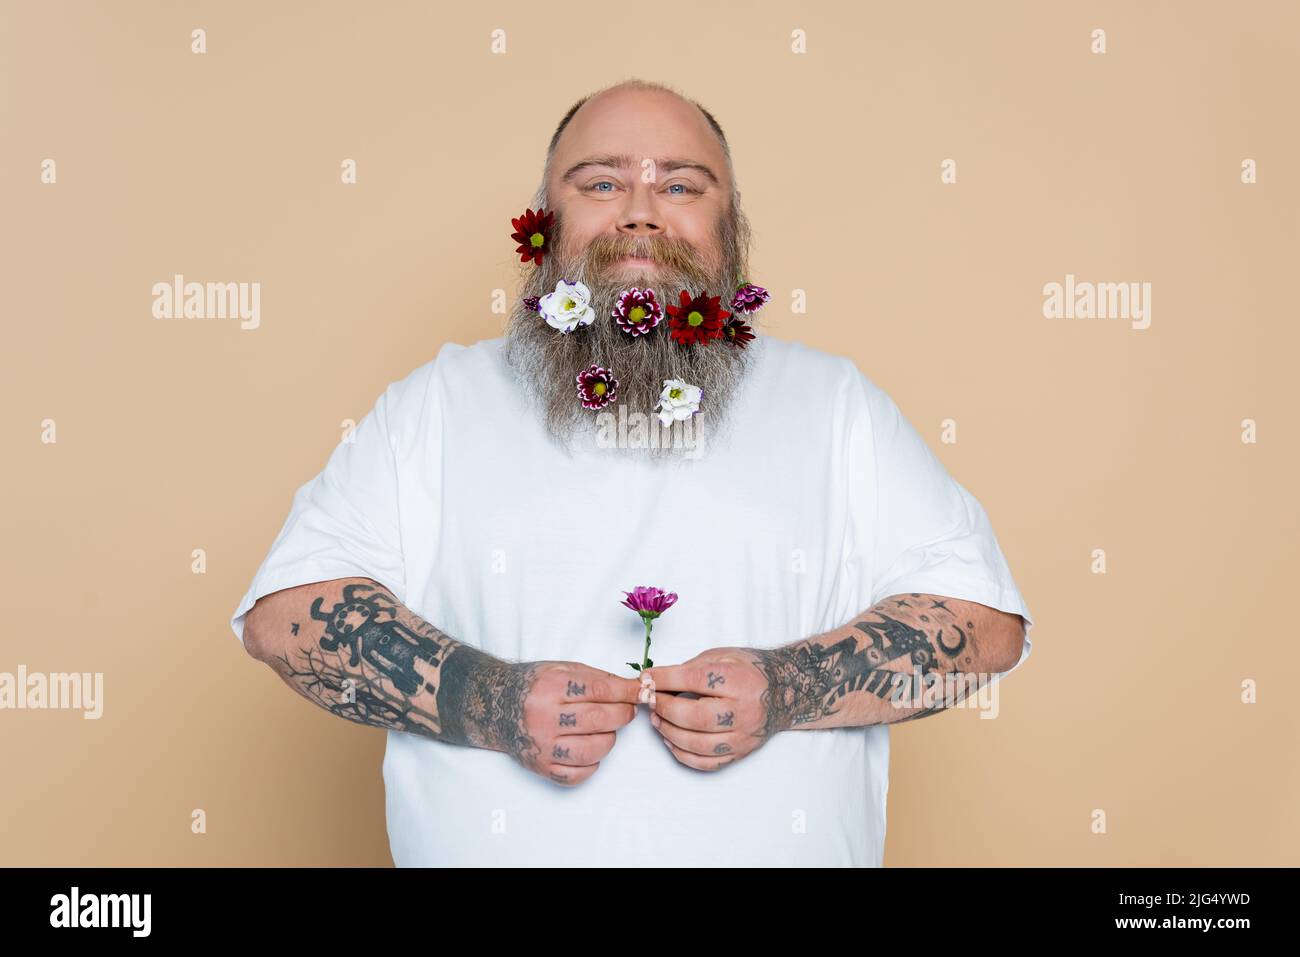 Barba decorata immagini e fotografie stock ad alta risoluzione - Alamy